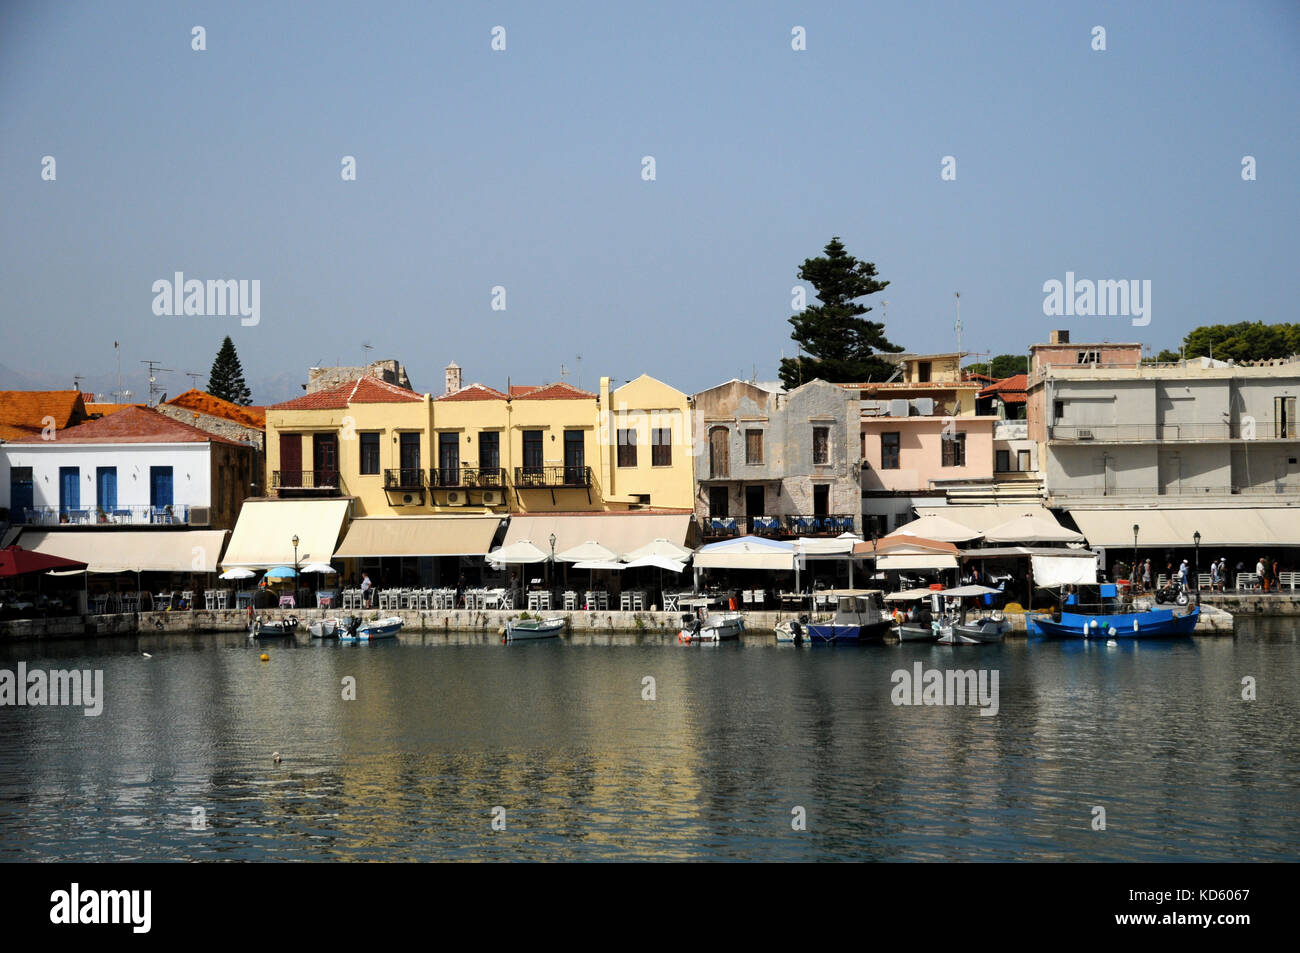 Der innere Hafen im Rethymno auf der griechischen Insel Kreta. Die meisten Gebäude mit Blick auf den Hafen sind Restaurants Catering für Touristen. Stockfoto